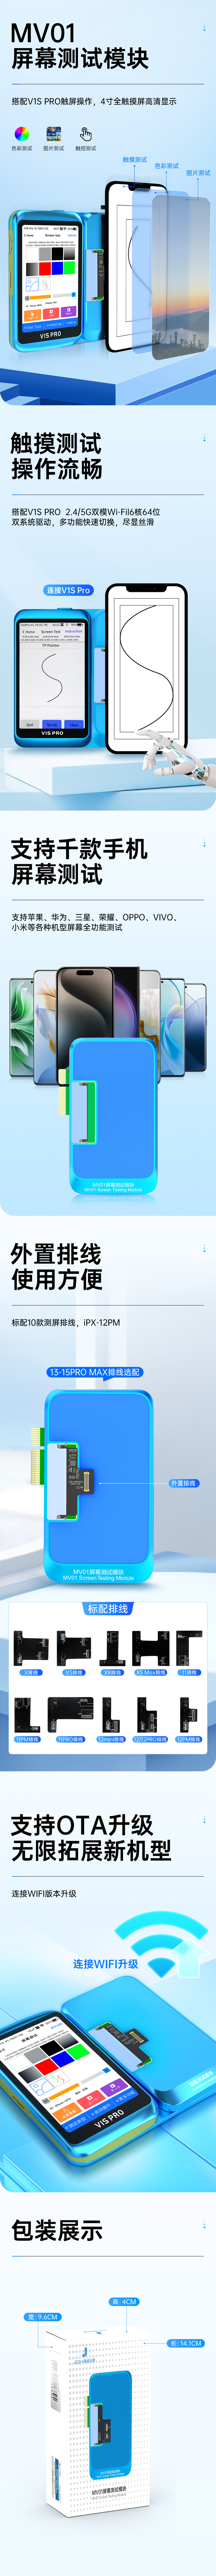 MV01屏幕测试模块-详情页-中文.jpg